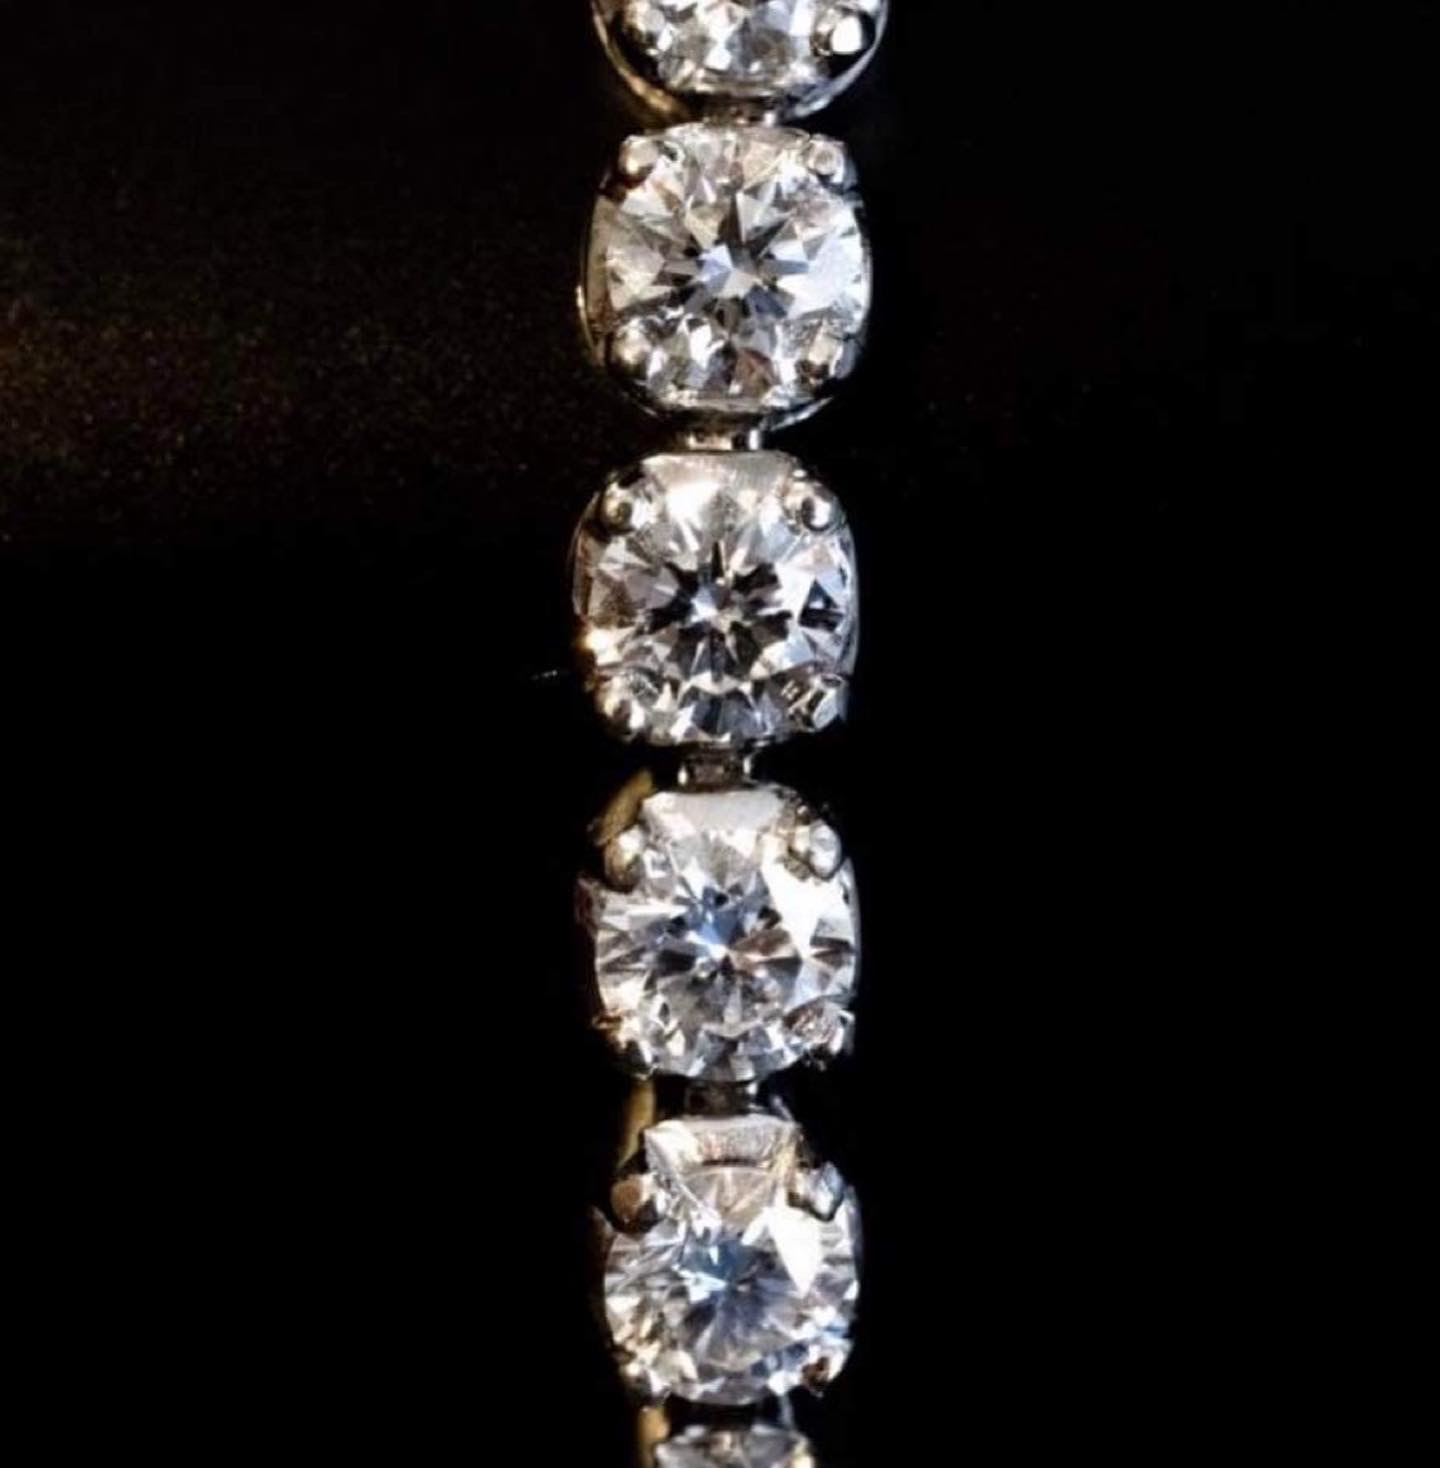 Aurore-Morisse-affaire-conclue-antiquaire-liège-bracelet-or-diamants1